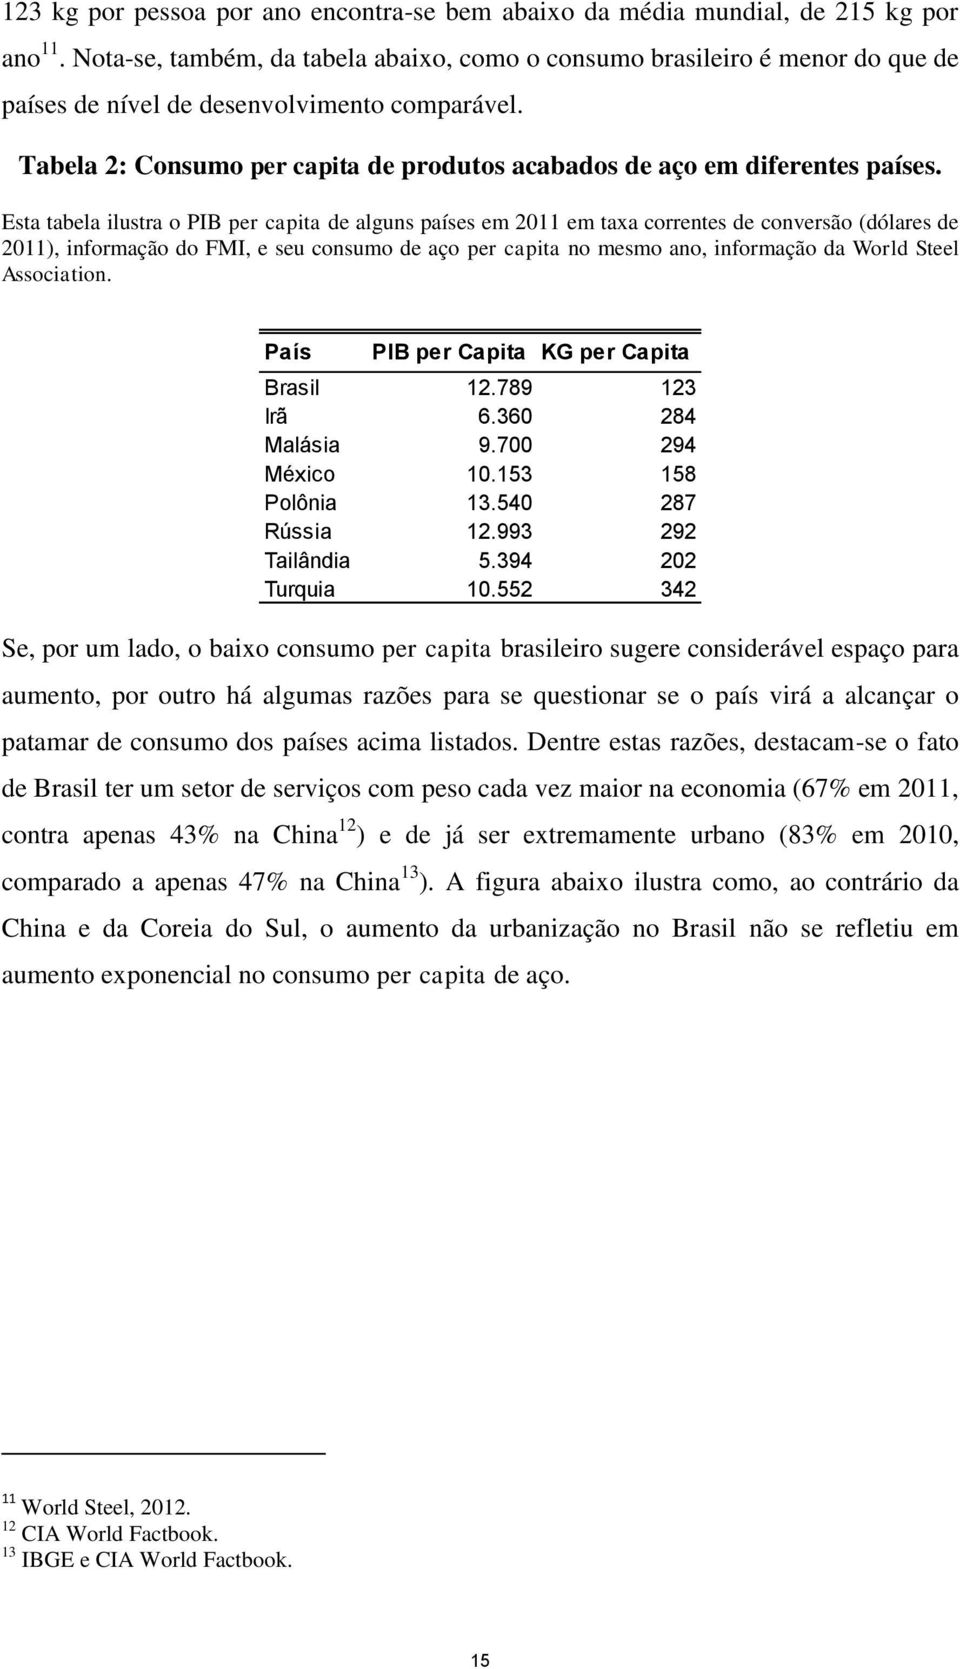 Tabela 2: Consumo per capita de produtos acabados de aço em diferentes países.